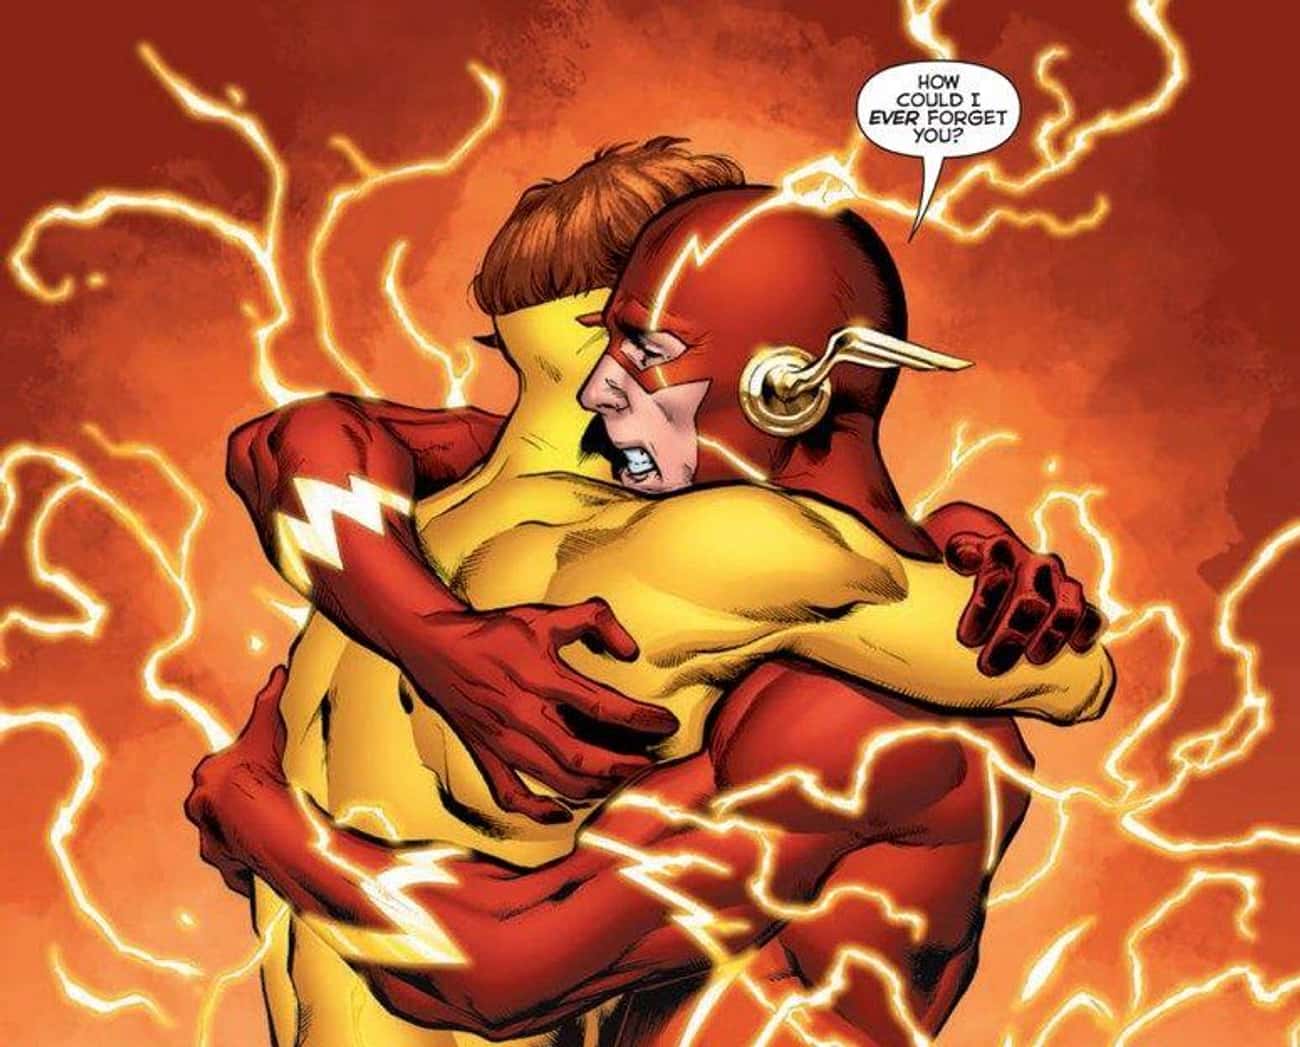 Barry Allen Remembers Wally West